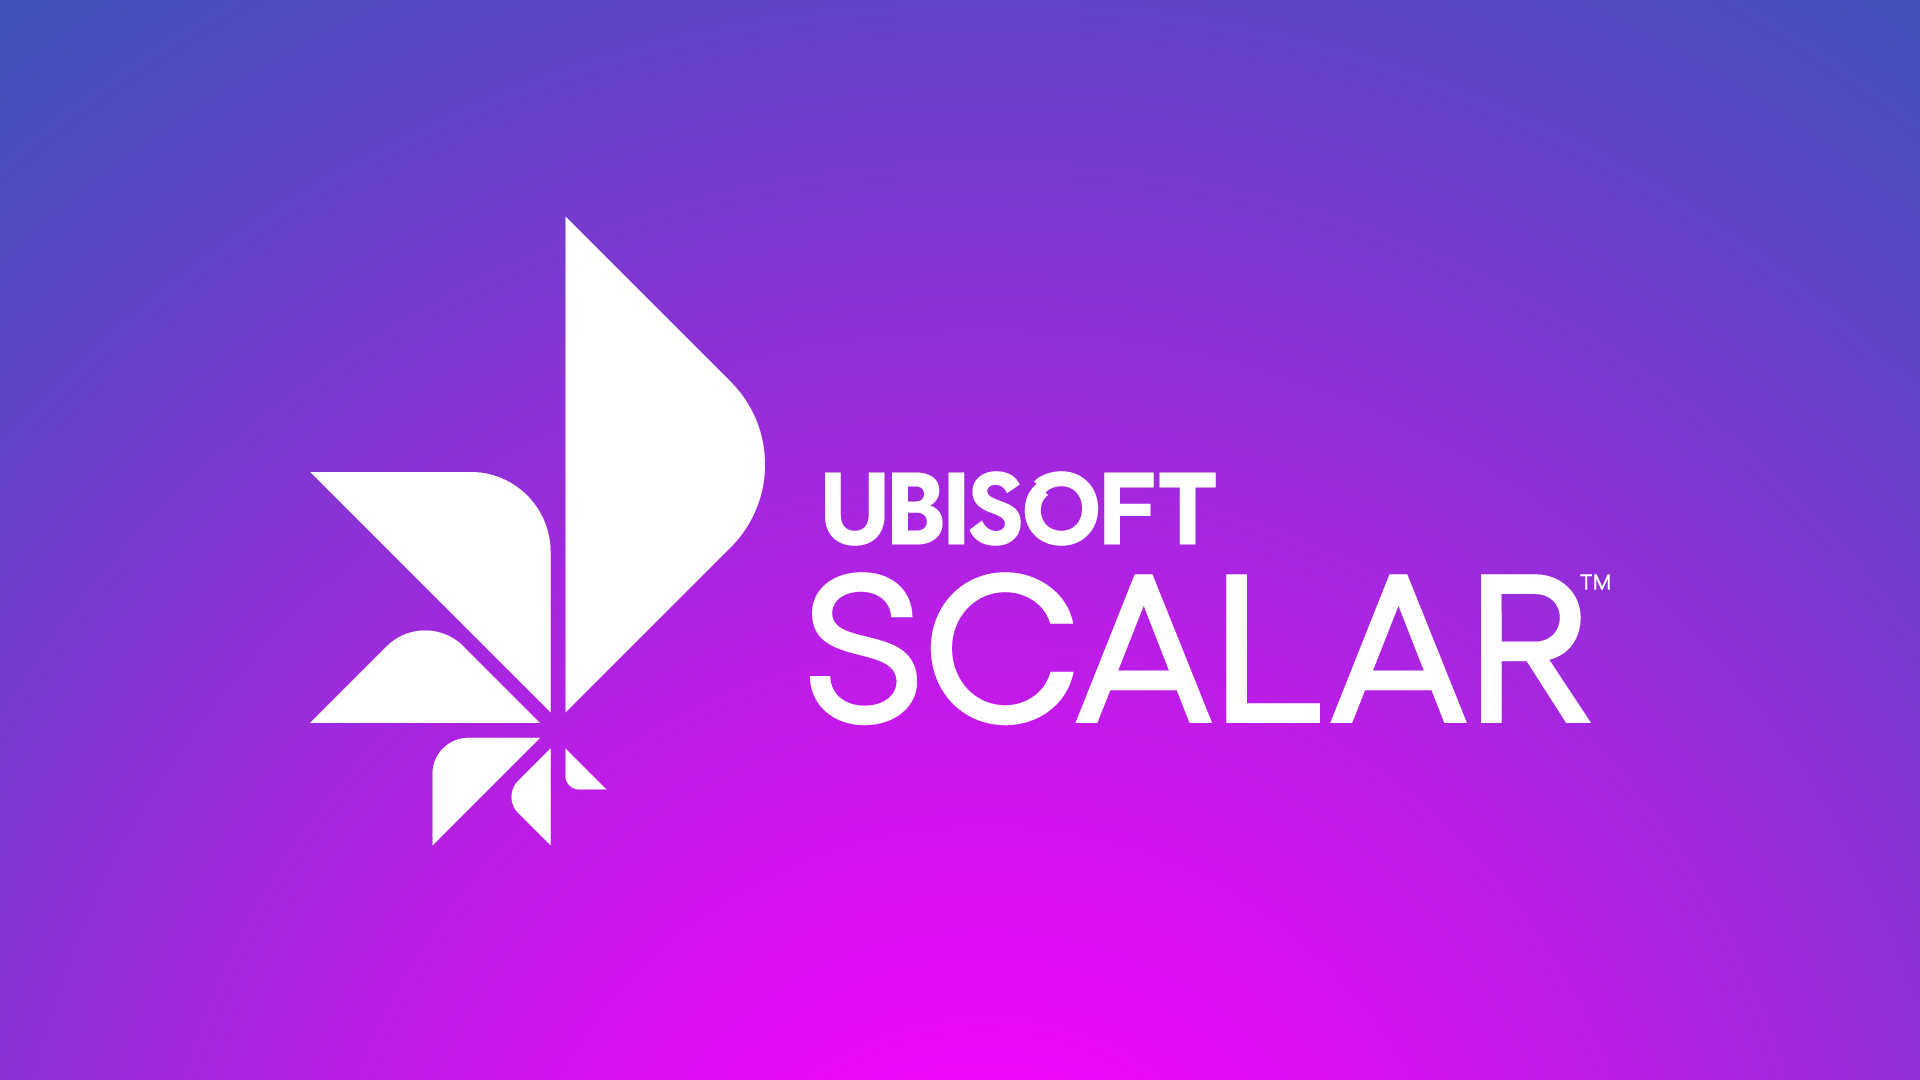 Ubisoft promises “unlimited power” with its cloud platform